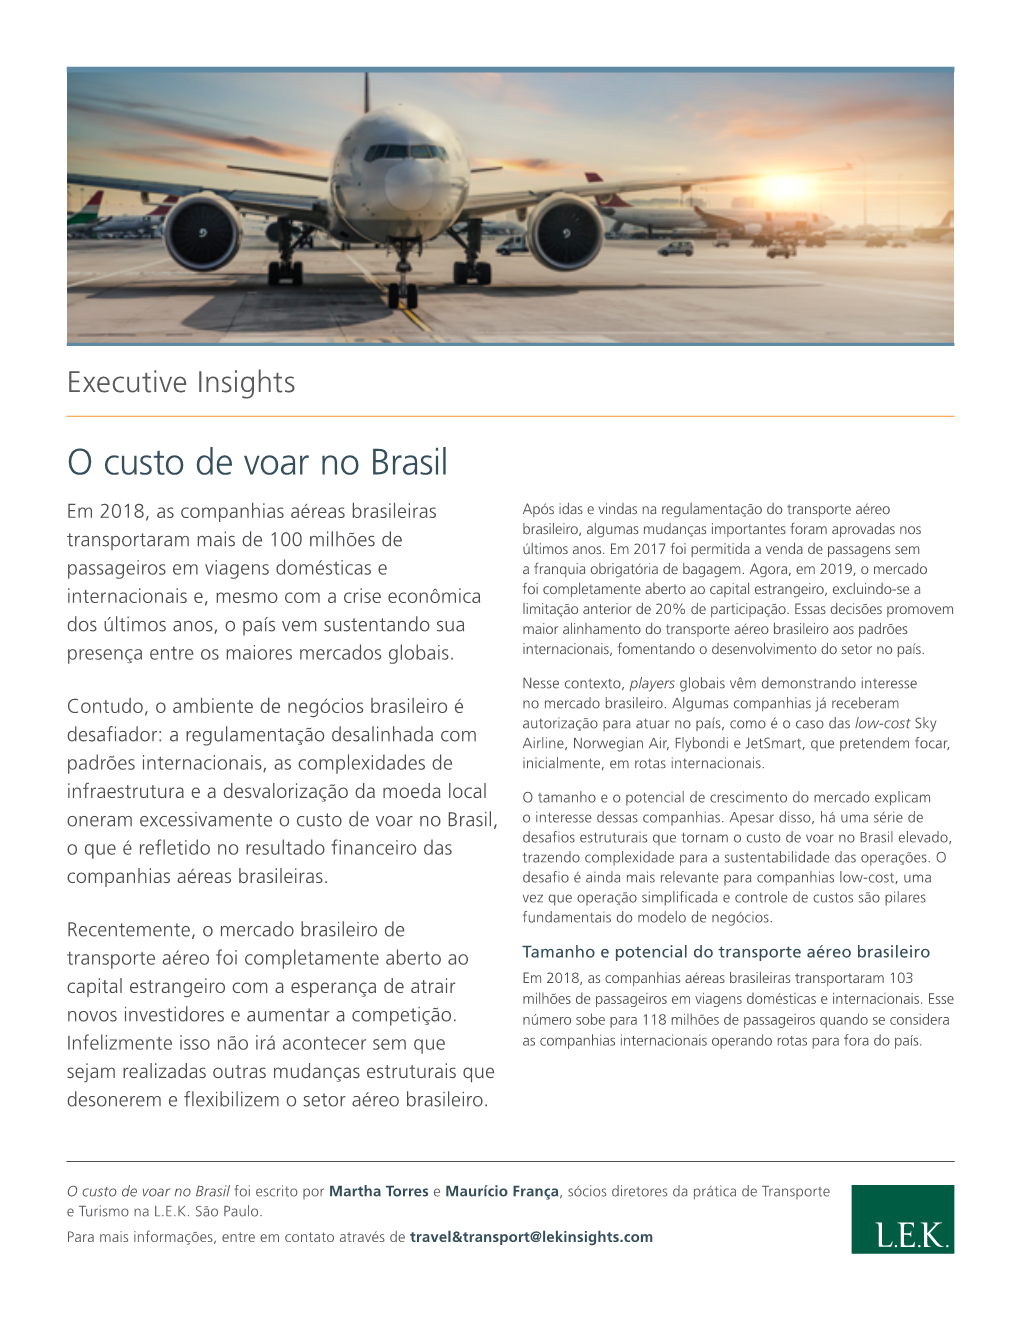 O Custo De Voar No Brasil